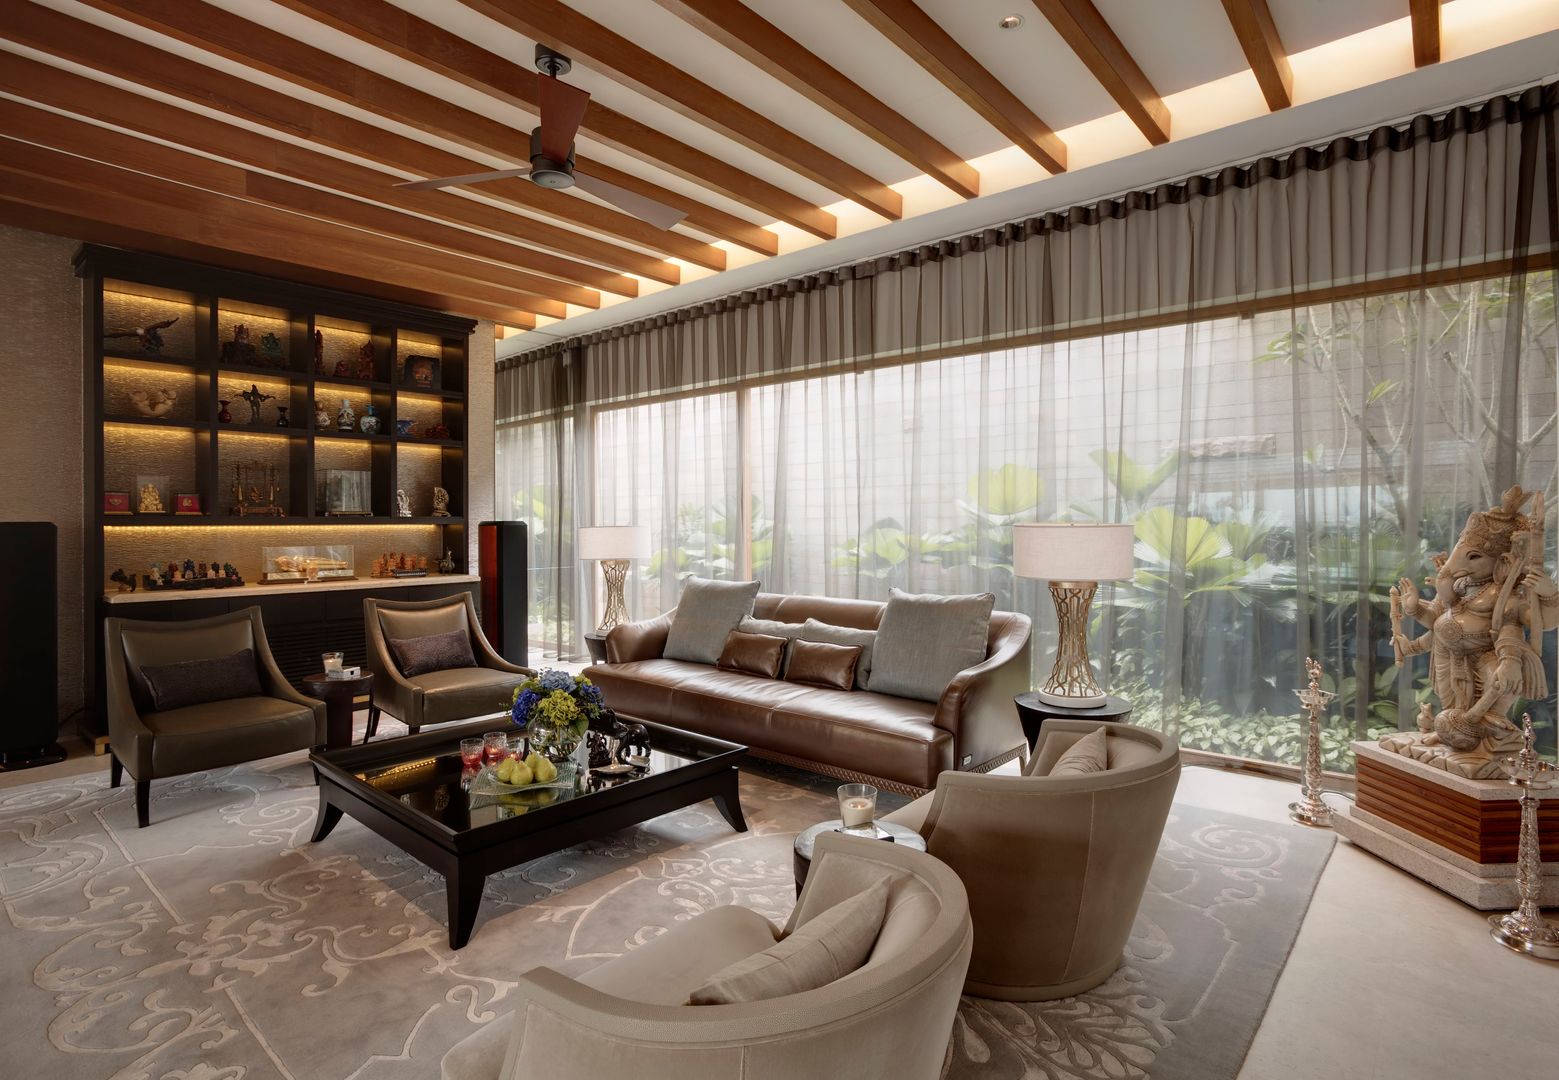 Luxurious Tropical Home, ANSANA ANSANA 트로피컬 거실